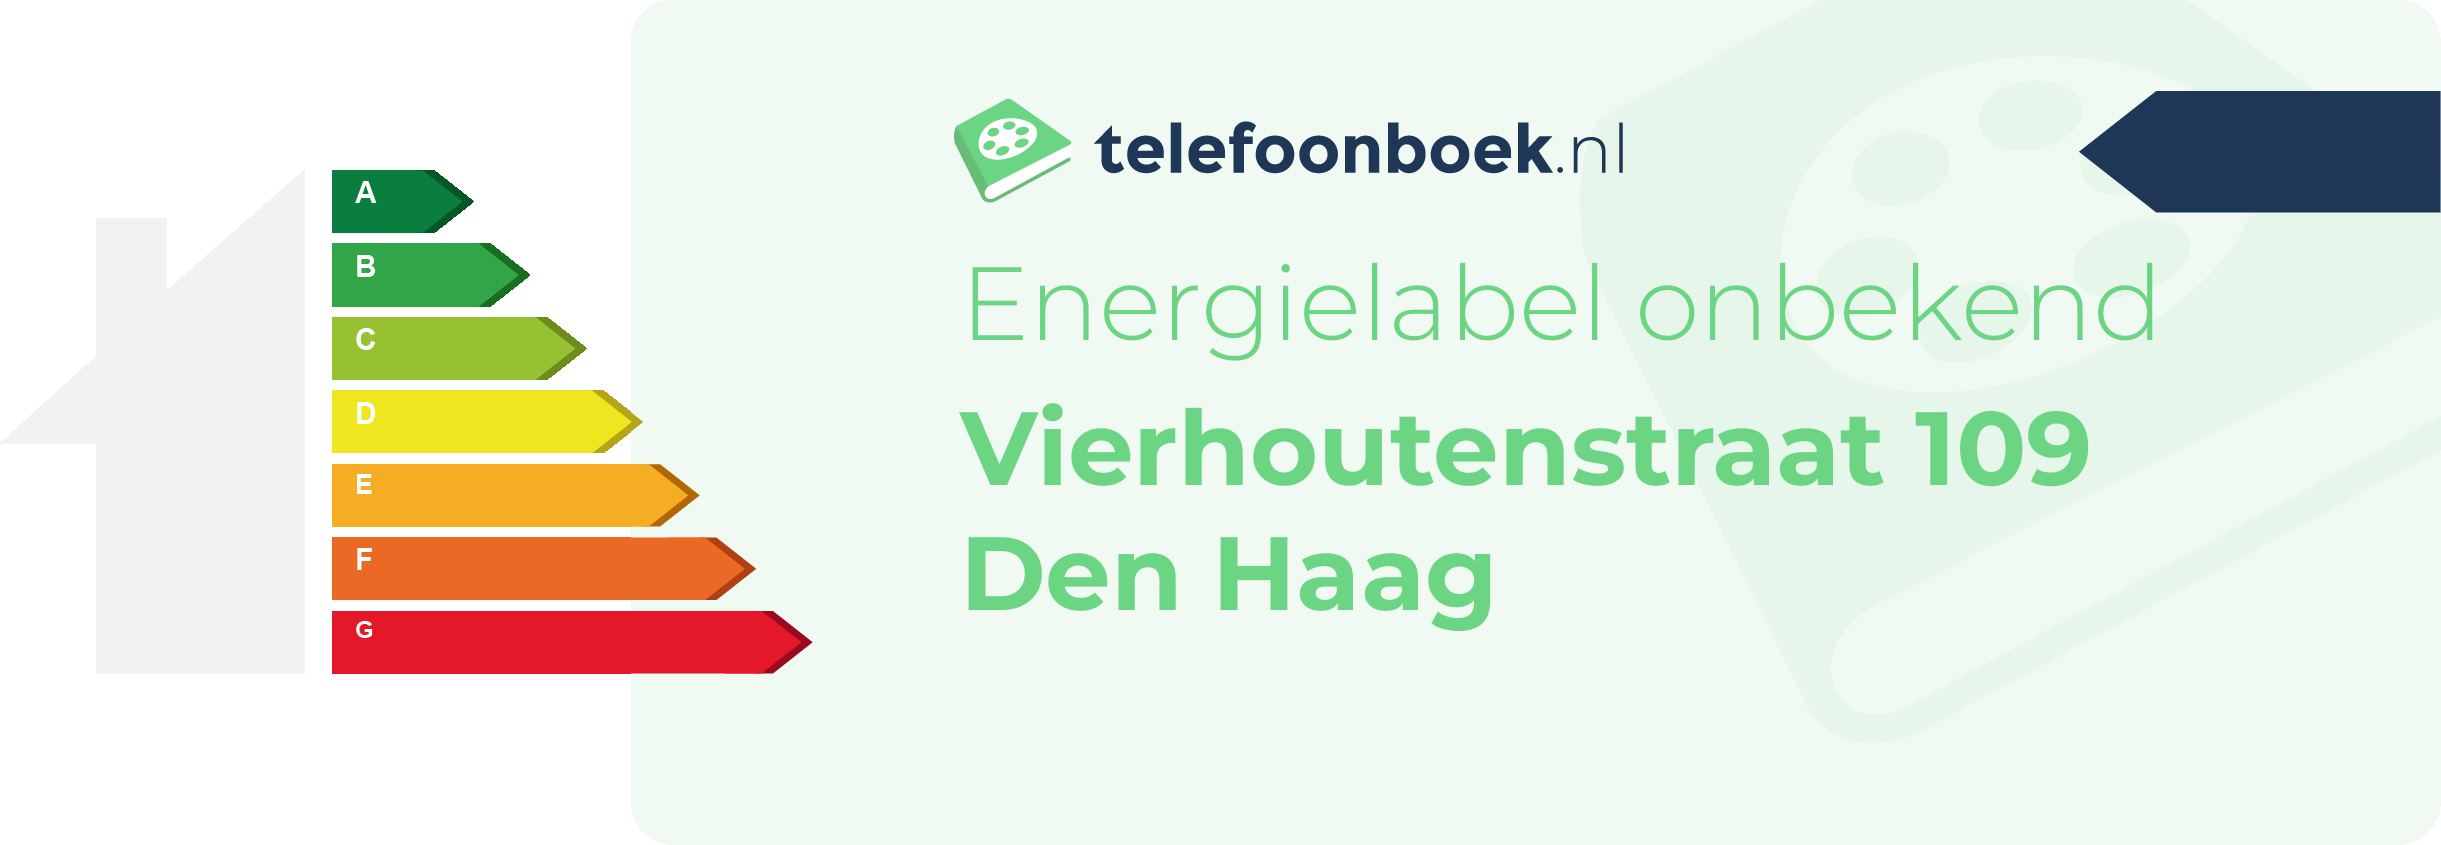 Energielabel Vierhoutenstraat 109 Den Haag